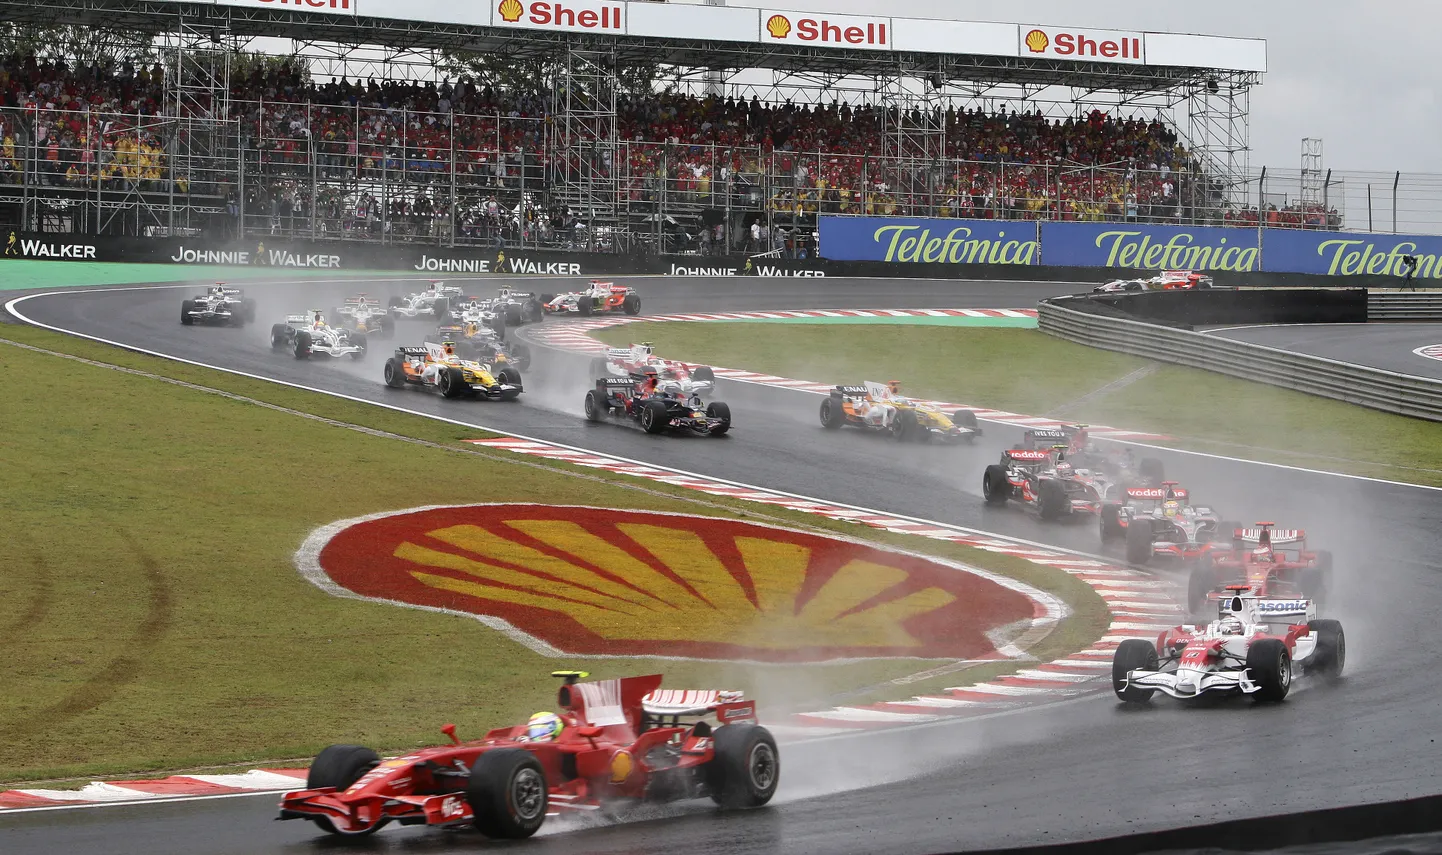 Toyotad kihutasid vormel 1 sarjas viimati nullindatel. 2008. aasta Brasiilia GP-l tehtud pildil on esiplaanil Ferrari mees Felipe Massa ning tema järel Jarno Trulli Toyotaga.